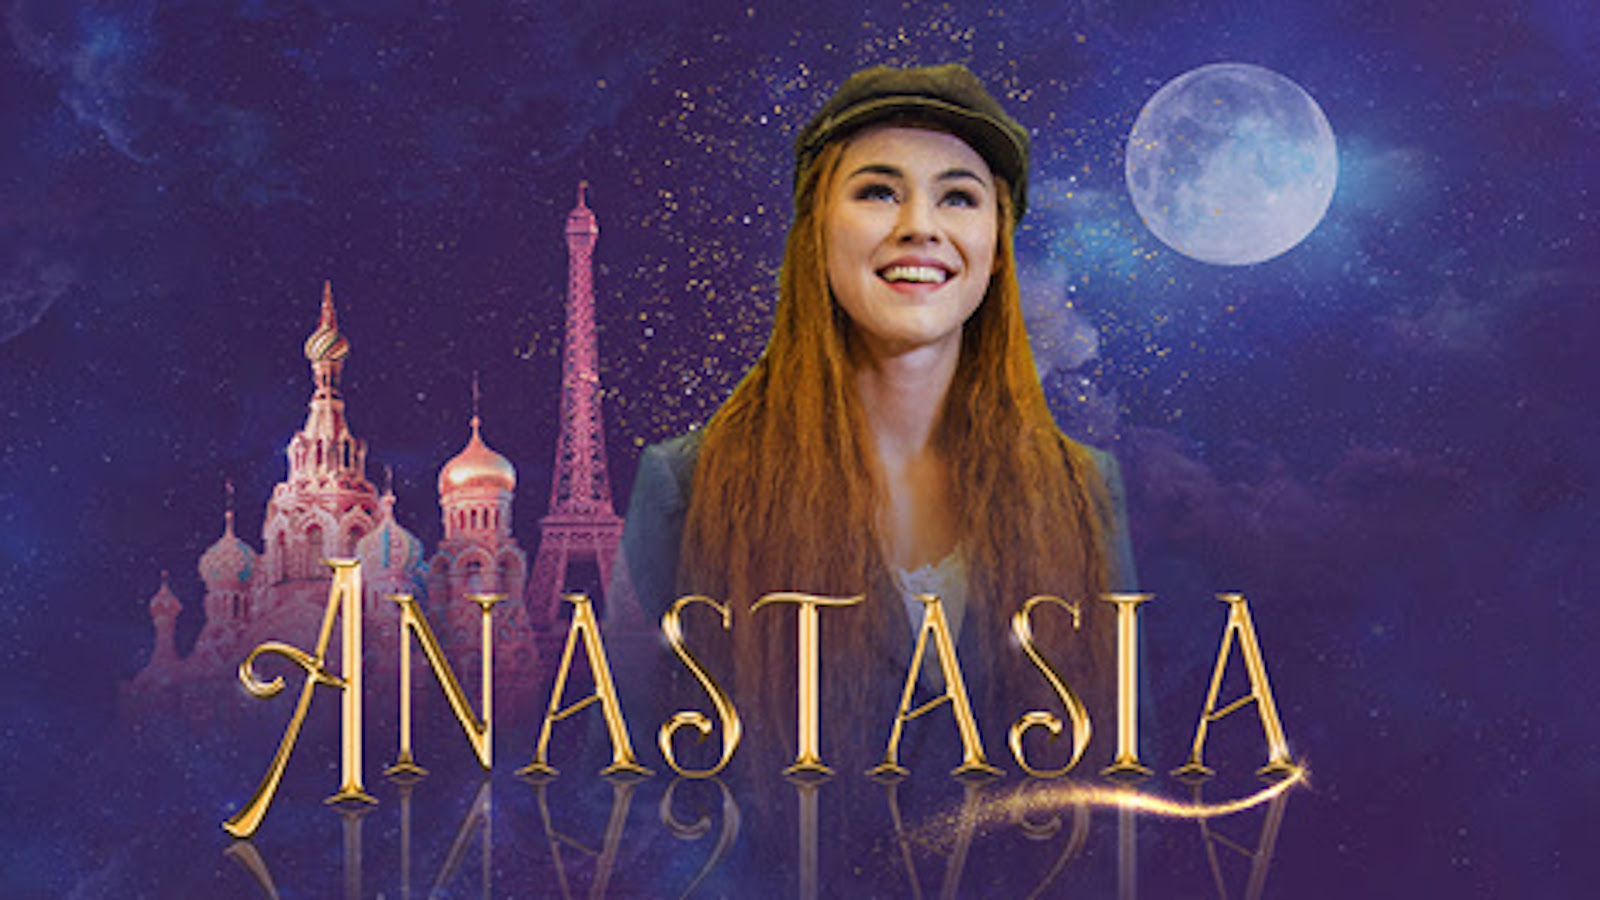 Tampereen Teatterin syksyllä 2022 ensi-iltaan tulevan Anastasia -musikaalin päätähti on Pia Pilz.